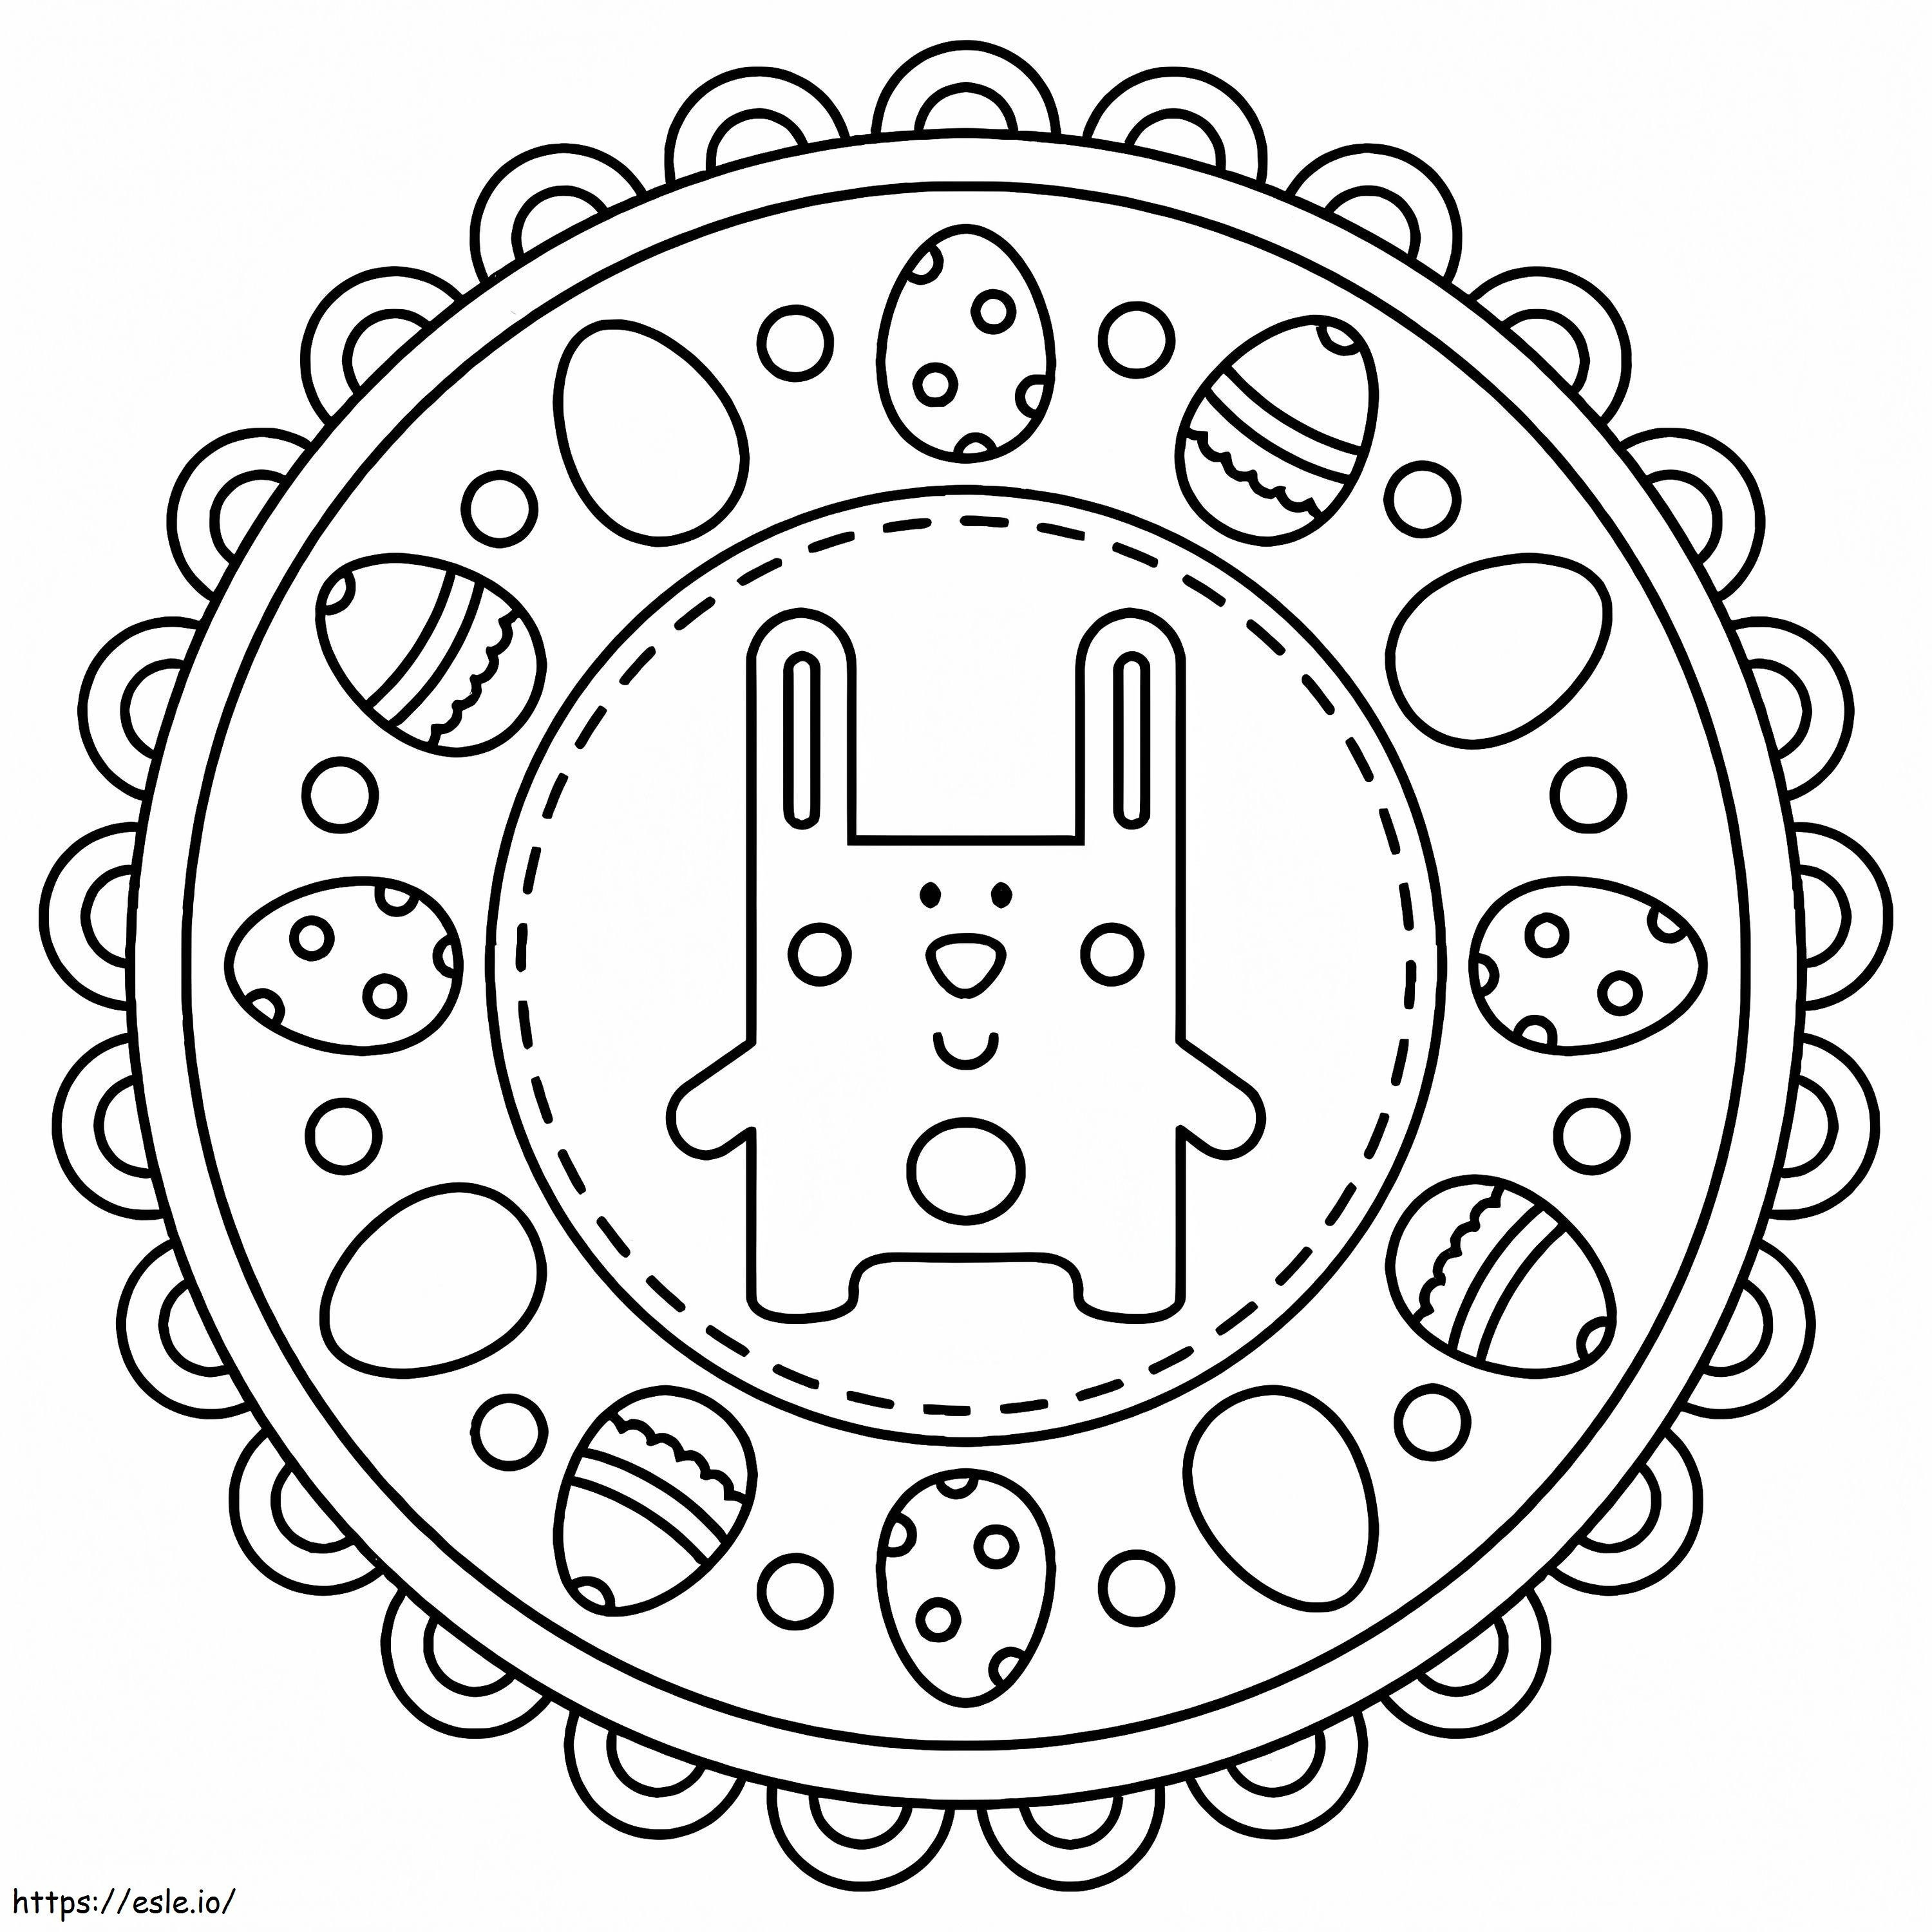 Wielkanocna Mandala Z Ślicznym Królikiem kolorowanka